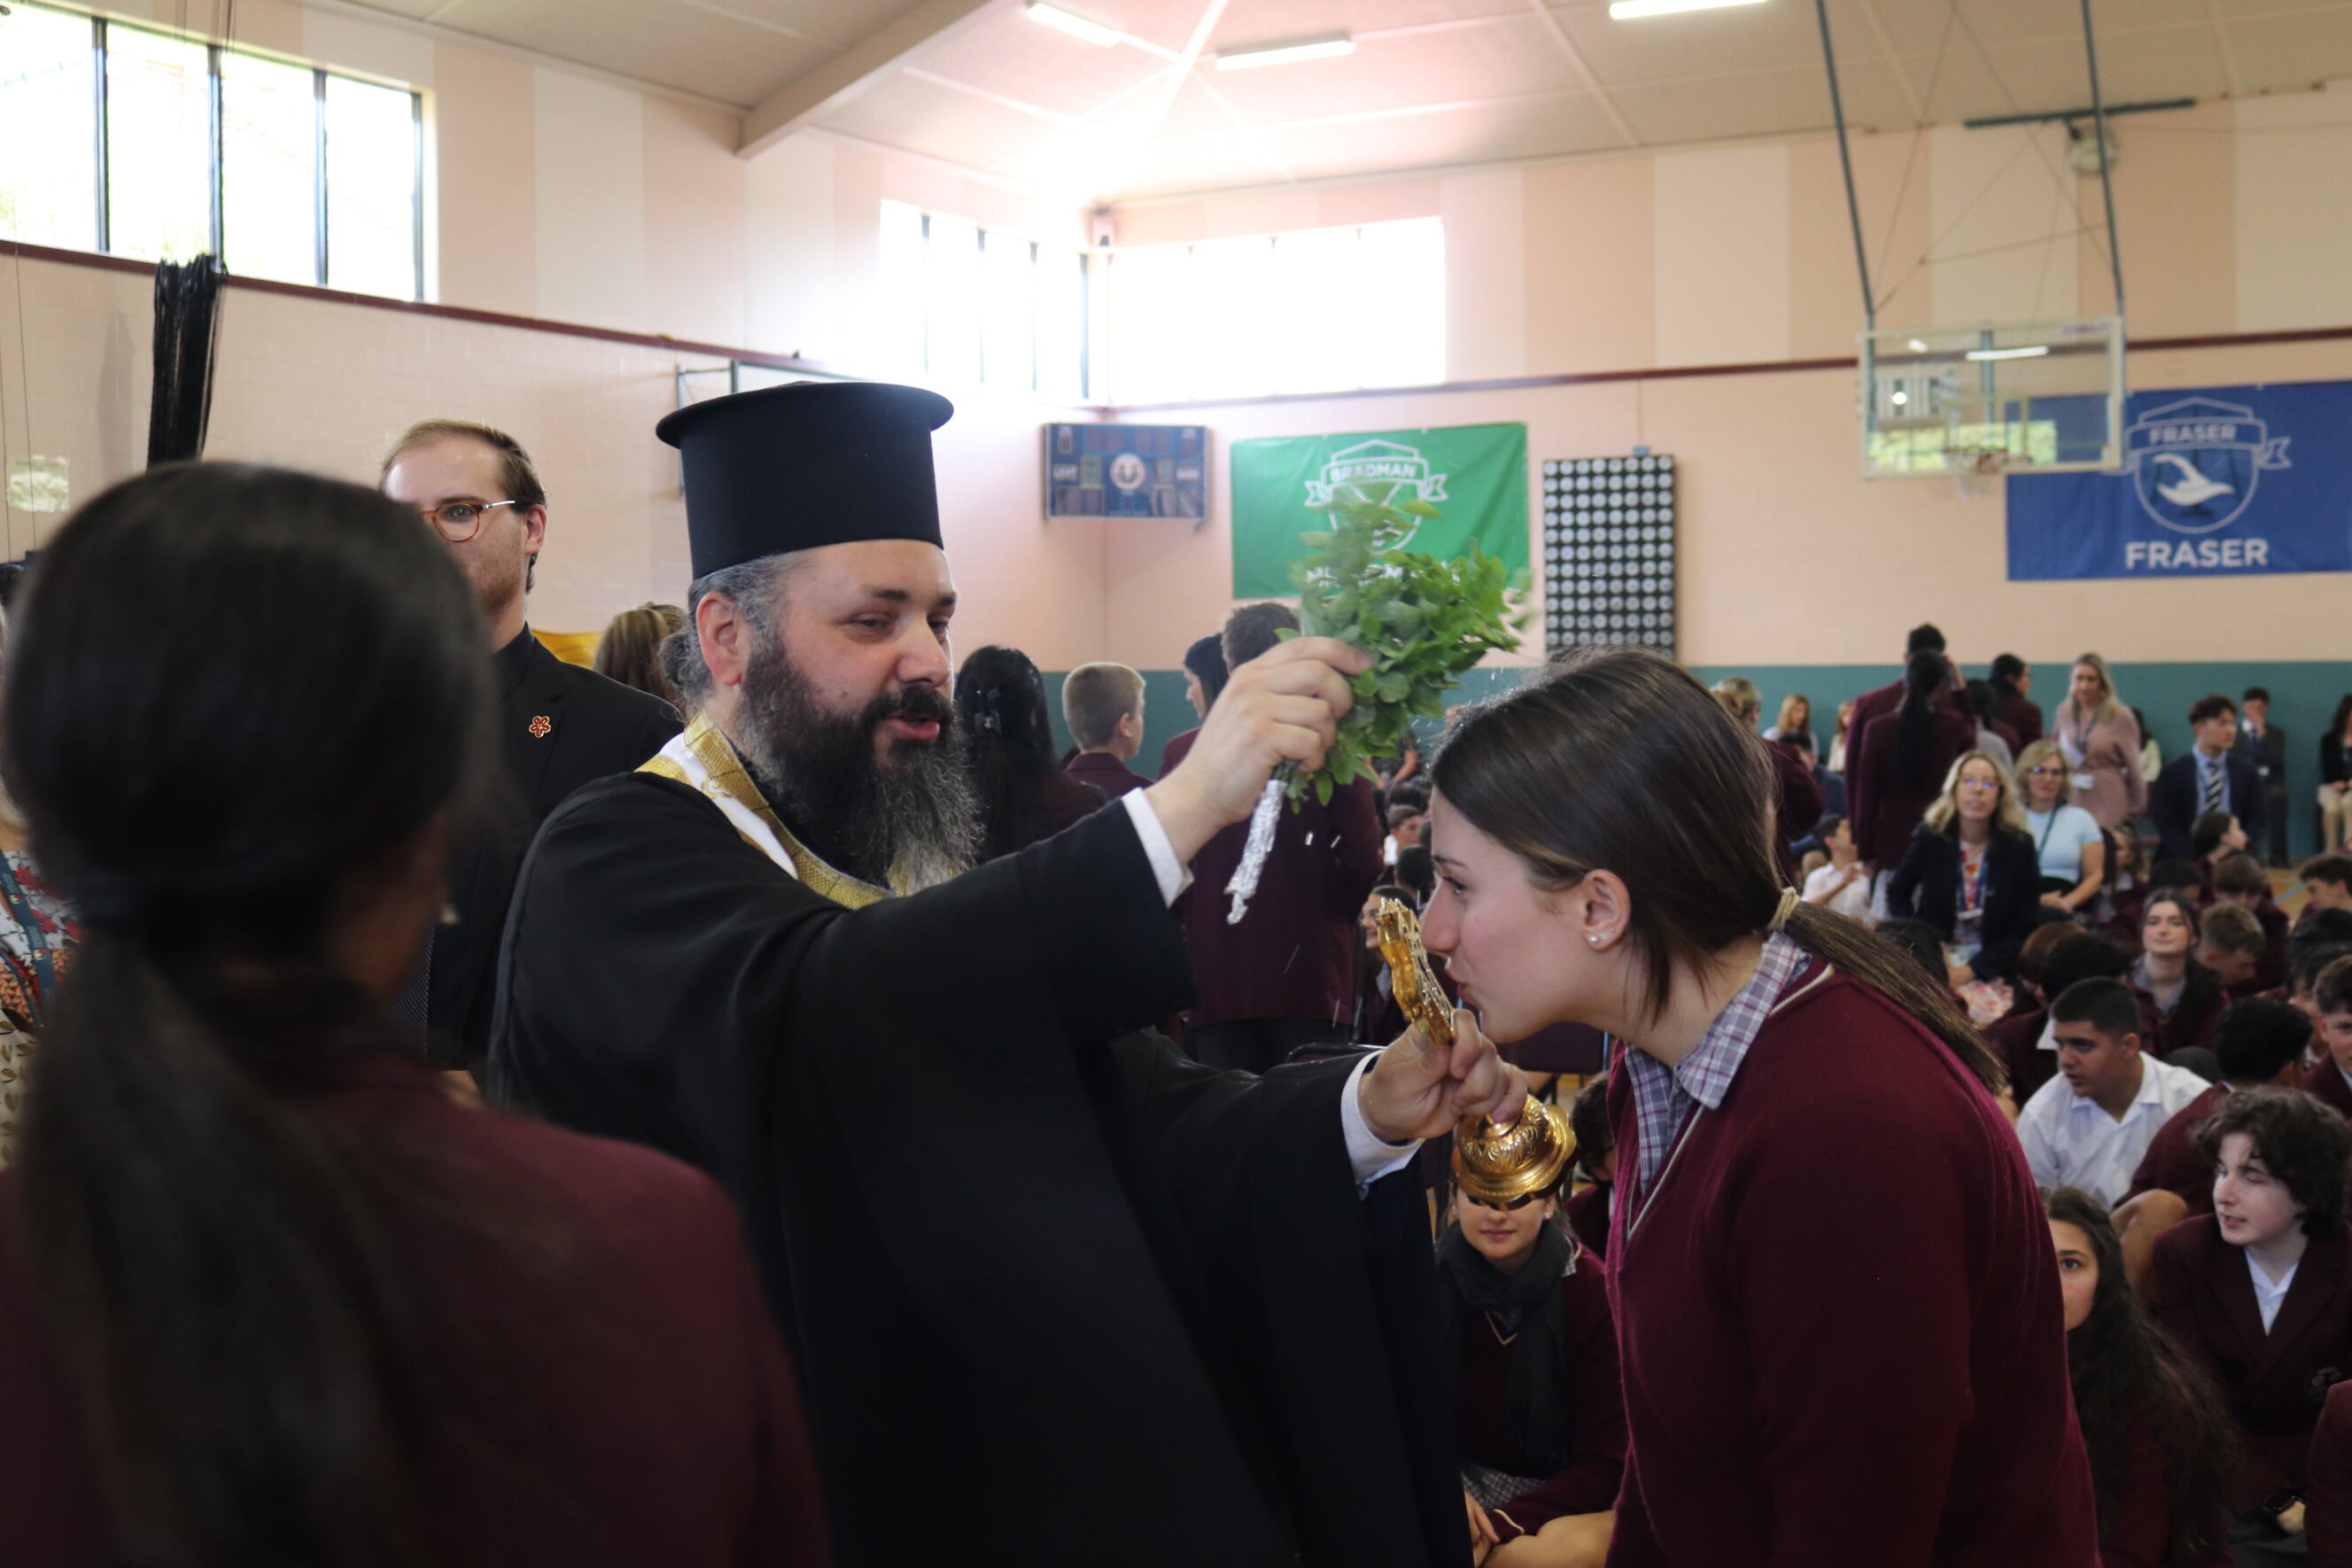 Αγιασμός για το νέο έτος στο Σχολείο Oakleigh Grammar της Μελβούρνης